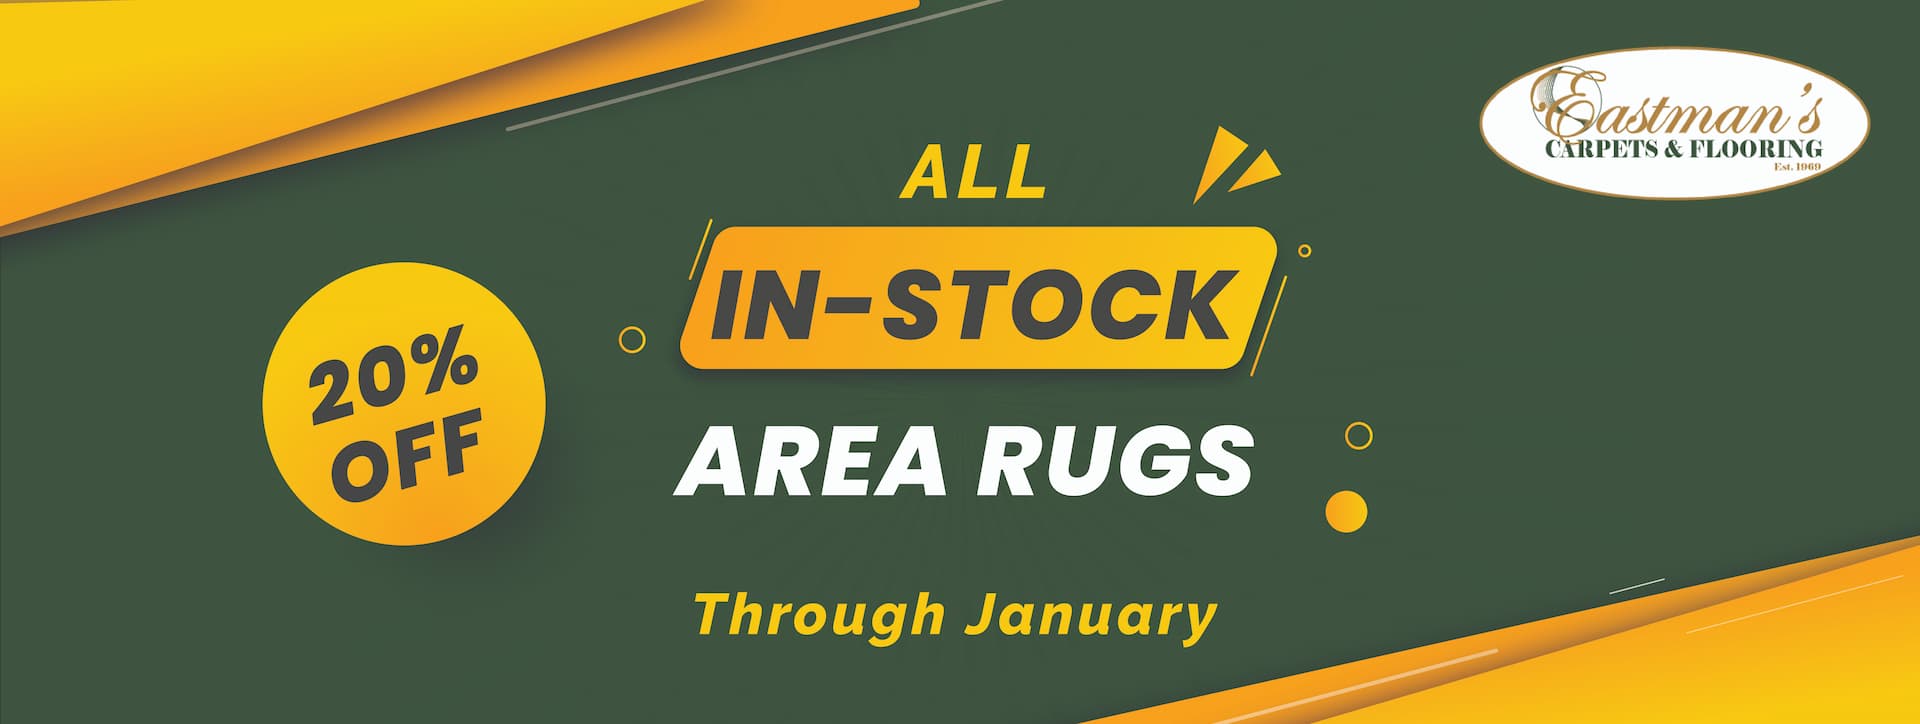 Eastmans_area rugs sale website header-01 (1)